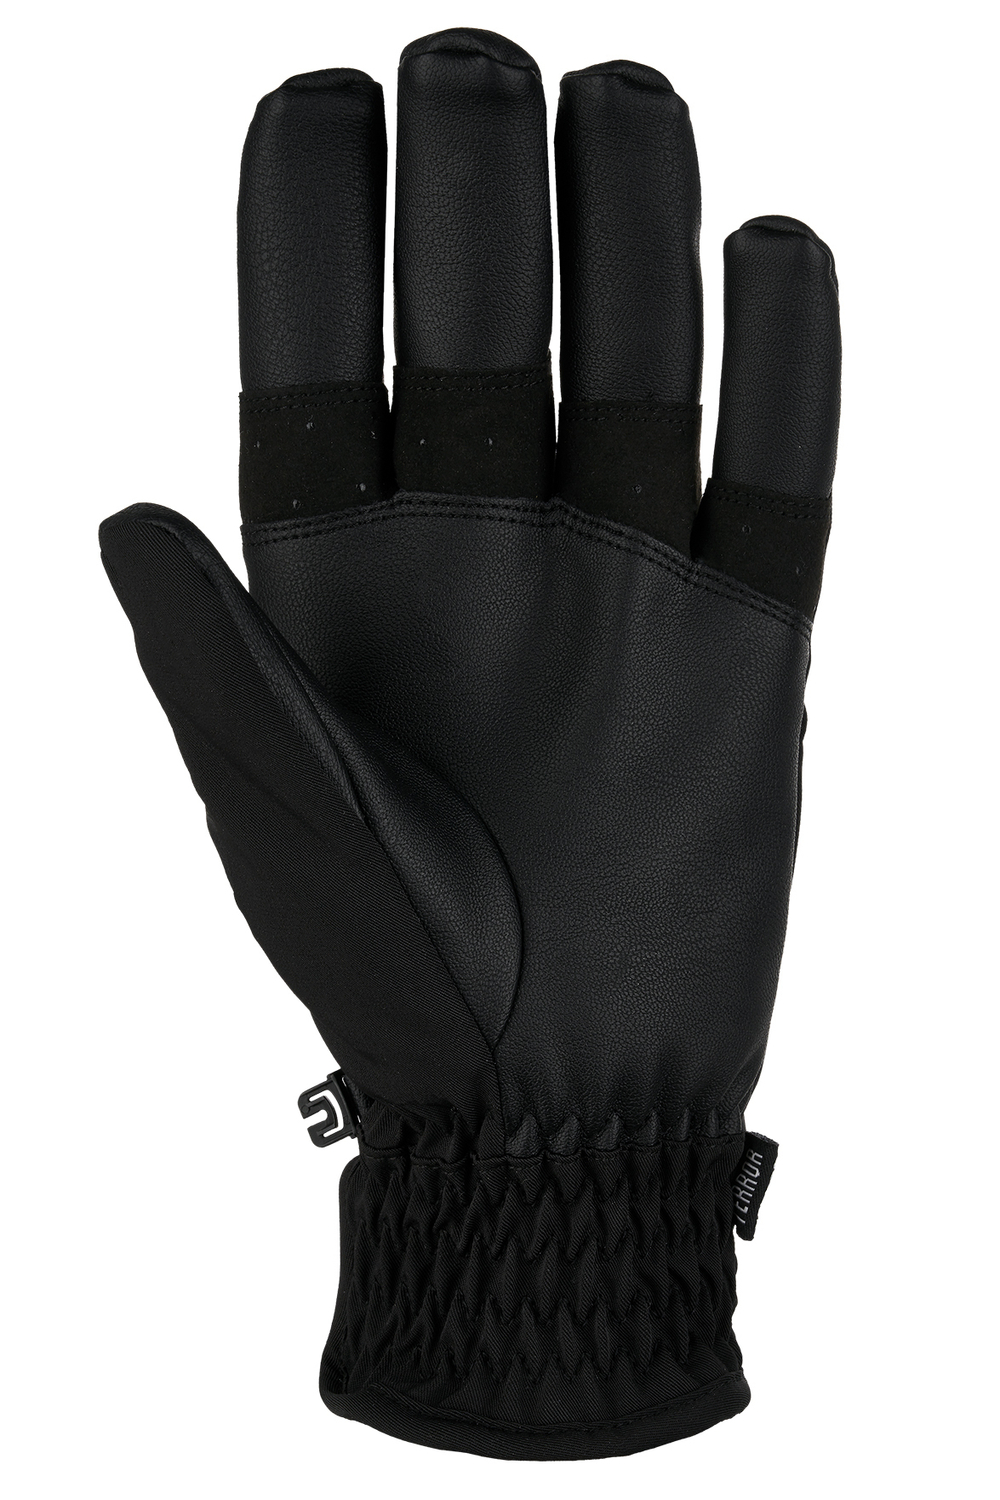 Перчатки TERROR - CREW Gloves (Black)